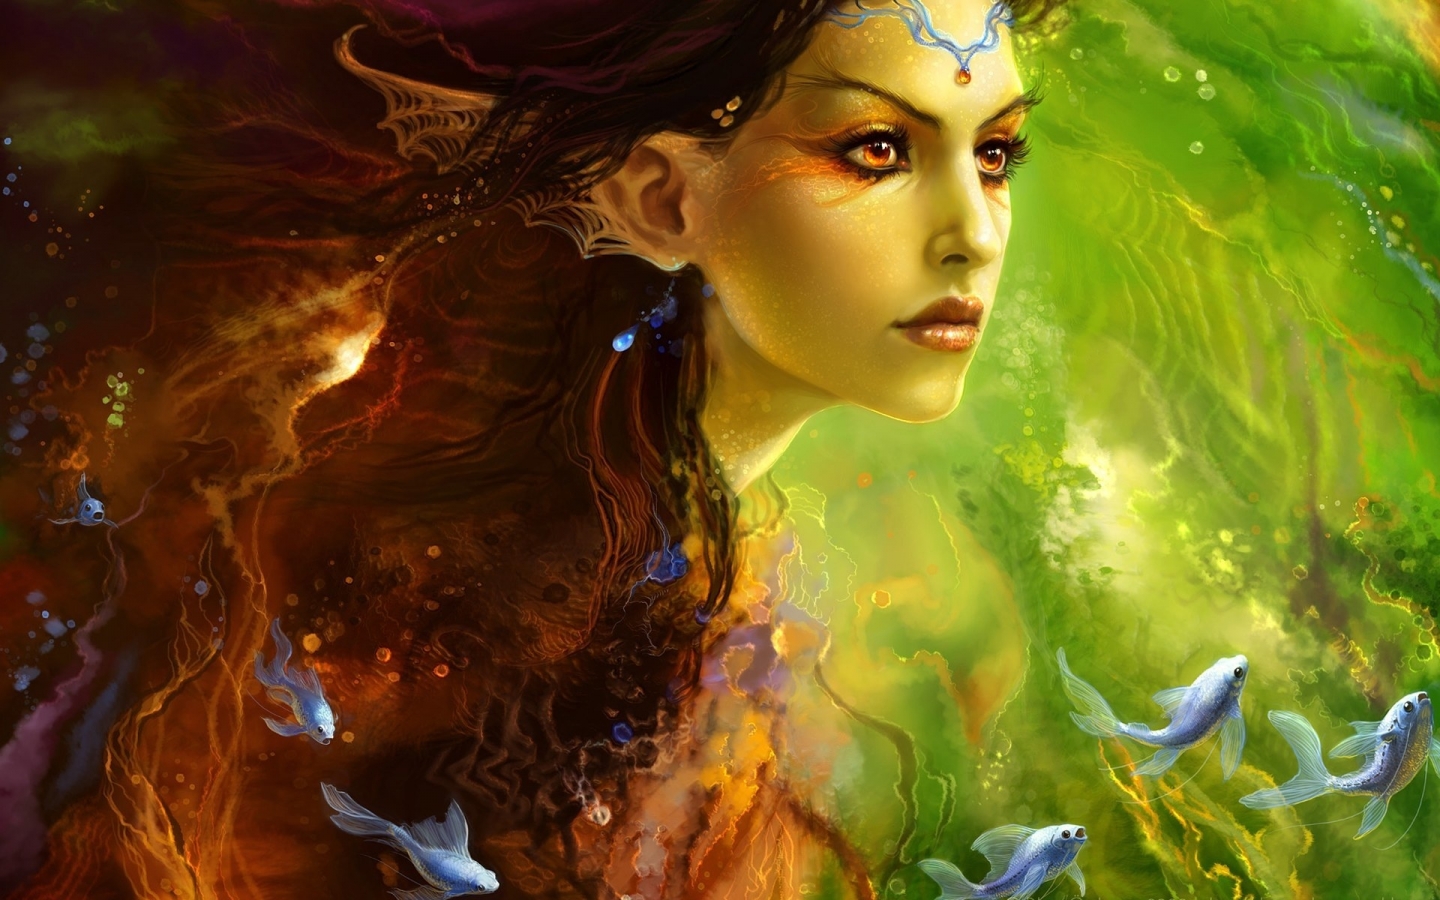 Fantasy Girl Siren Princess for 1440 x 900 widescreen resolution